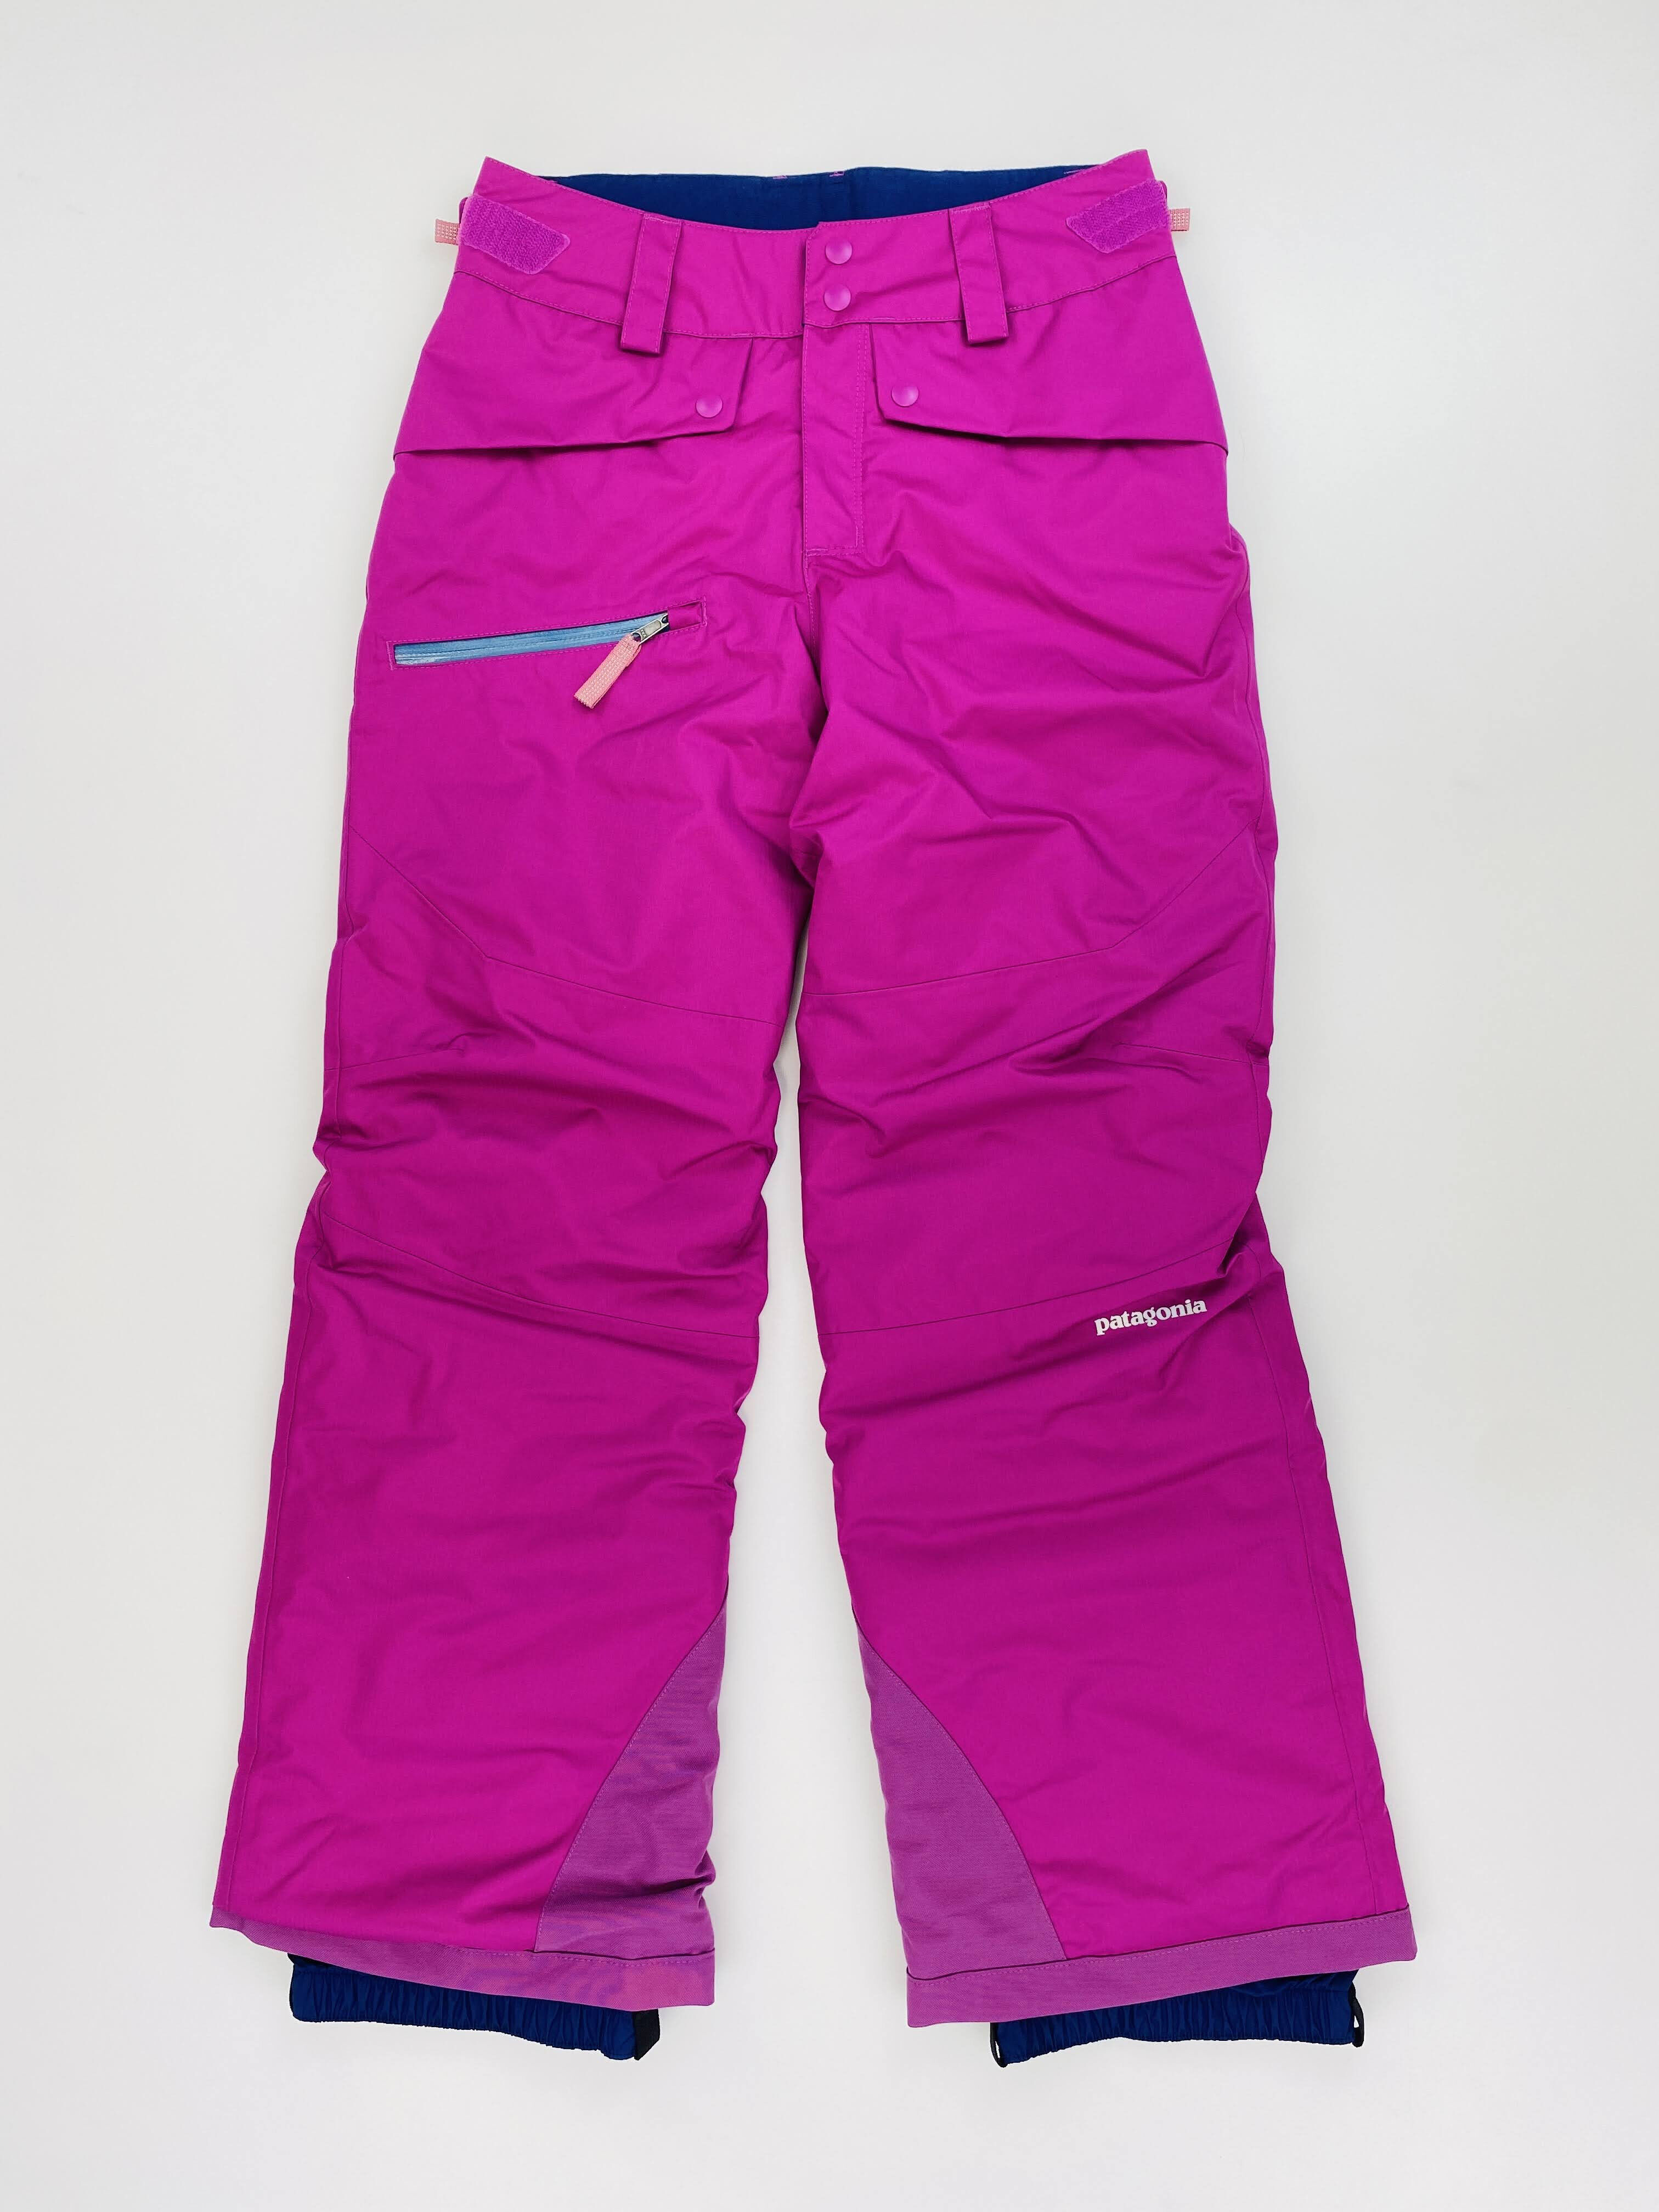 Patagonia Girls' Snowbelle Pants - Second Hand Dětské lyžařské kalhoty - Růžový - M | Hardloop